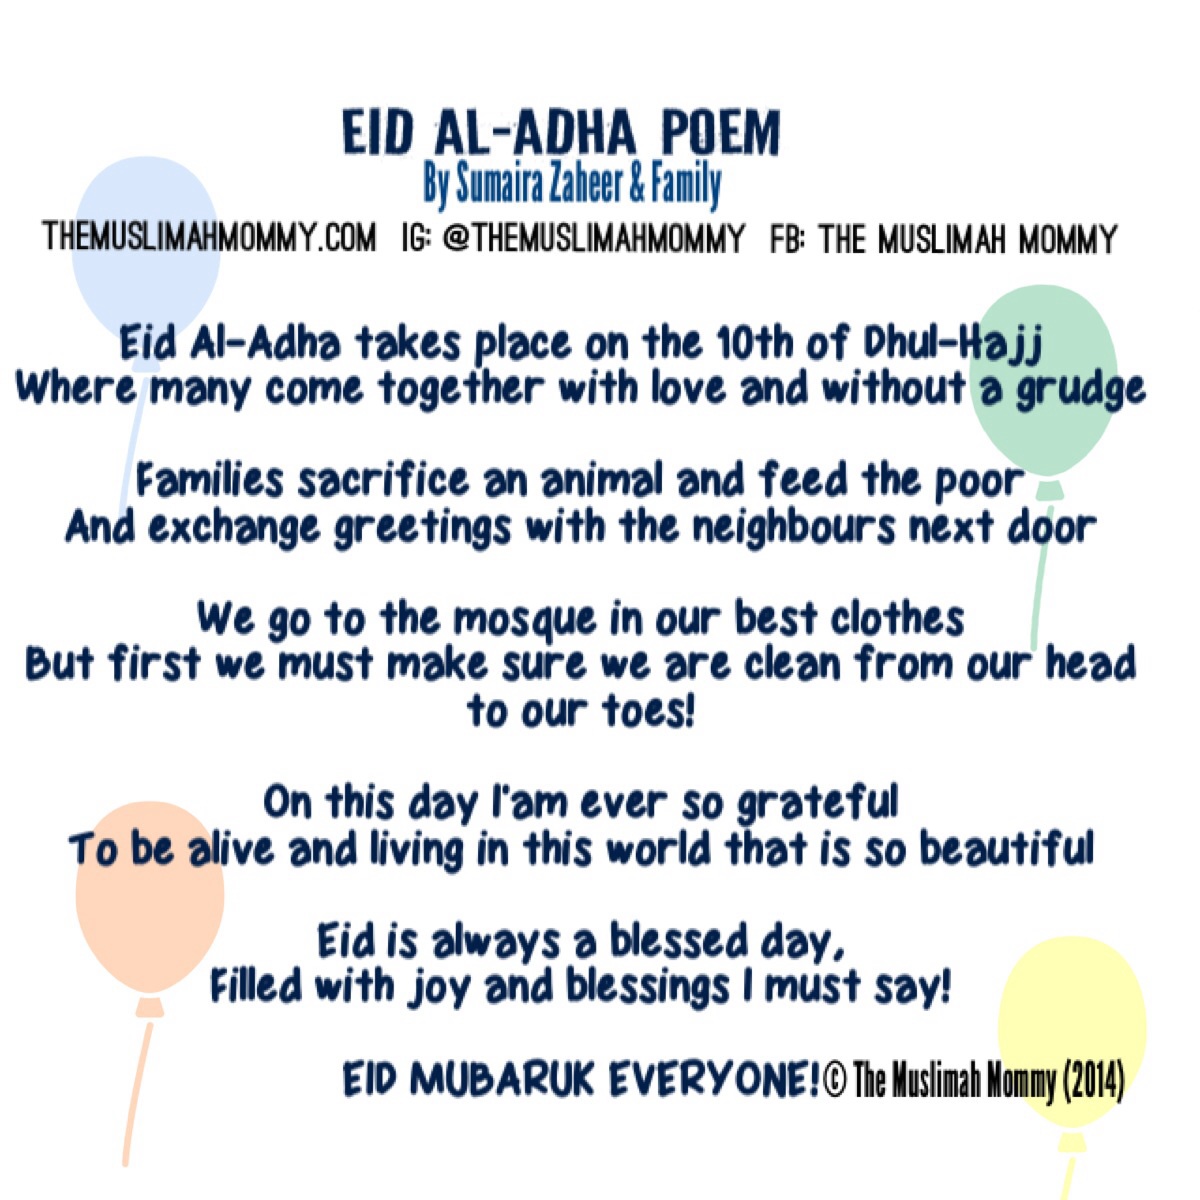 Eid Al-Adha Poem - The Muslimah Mommy